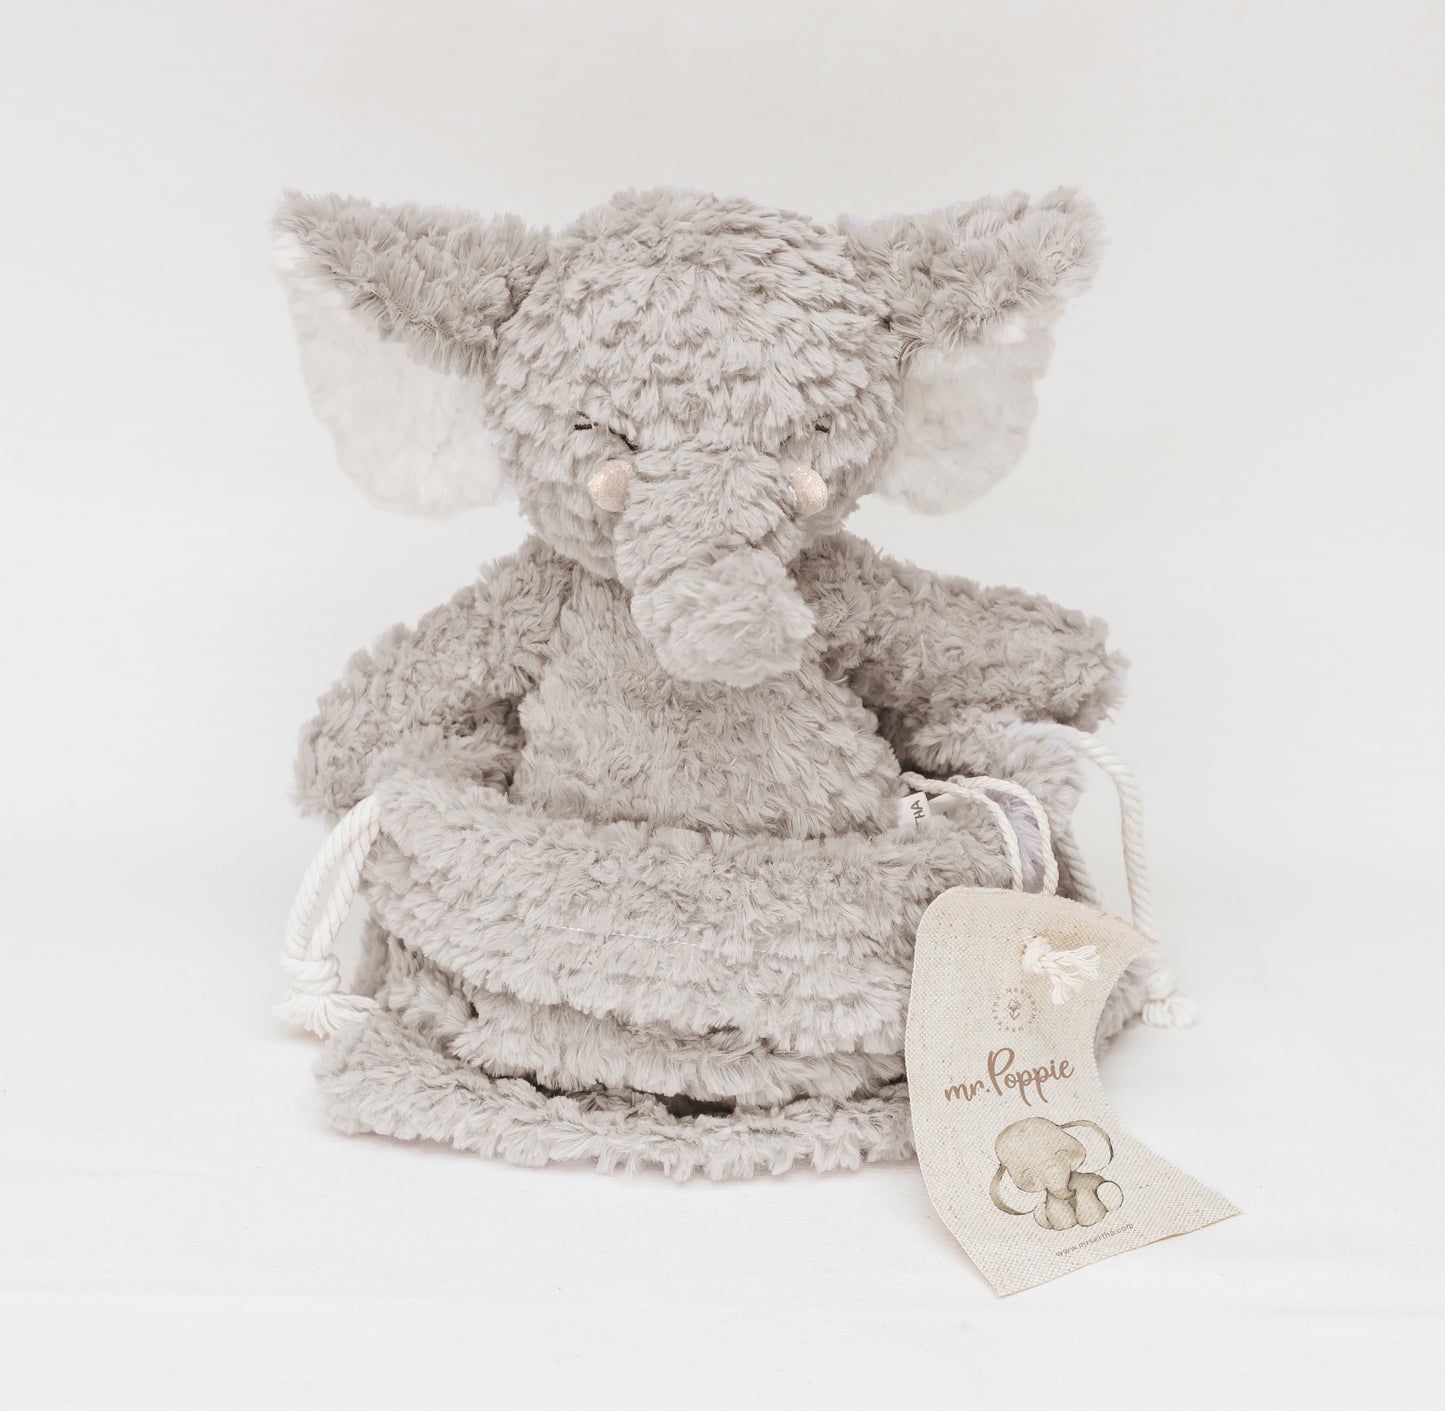 Stuffed animals - Mr. Poppie - Elephant